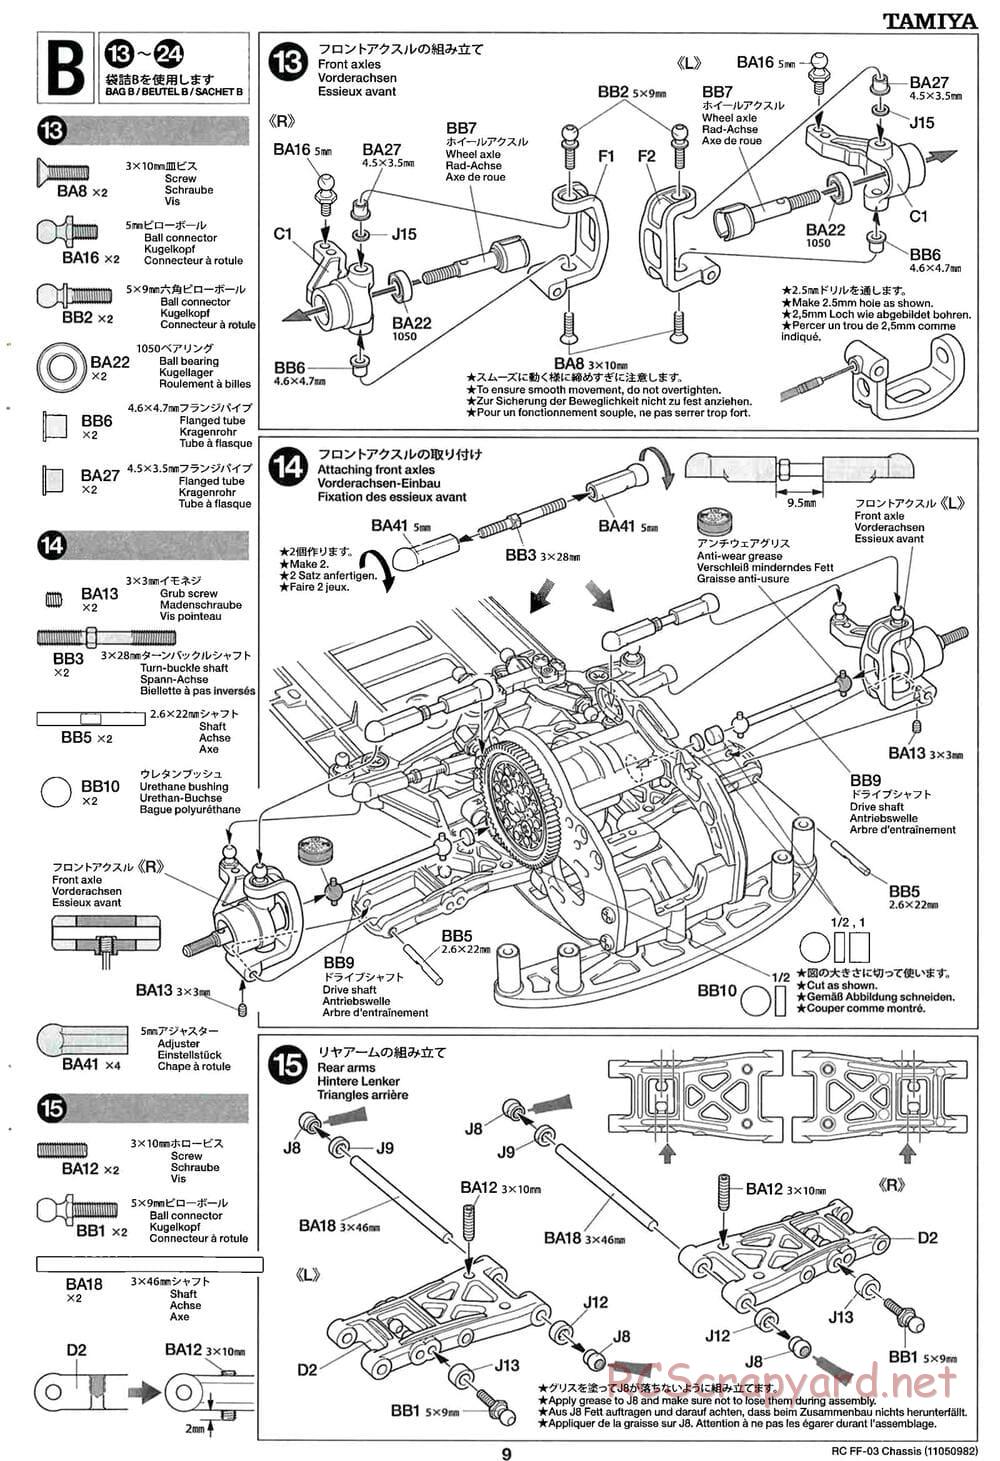 Tamiya - Honda CR-Z - FF-03 Chassis - Manual - Page 9